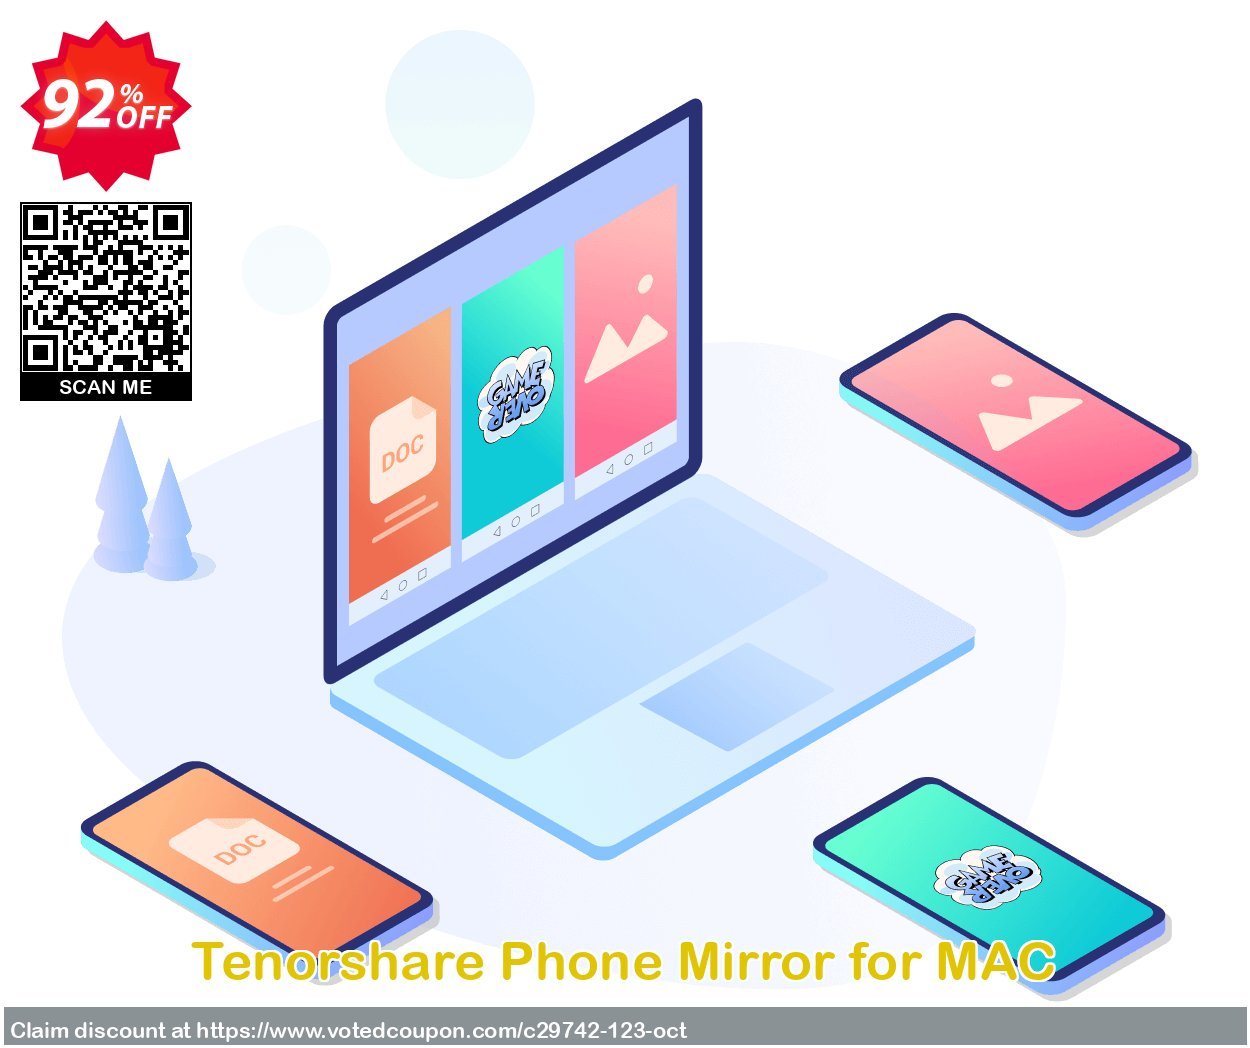 Tenorshare Phone Mirror for MAC